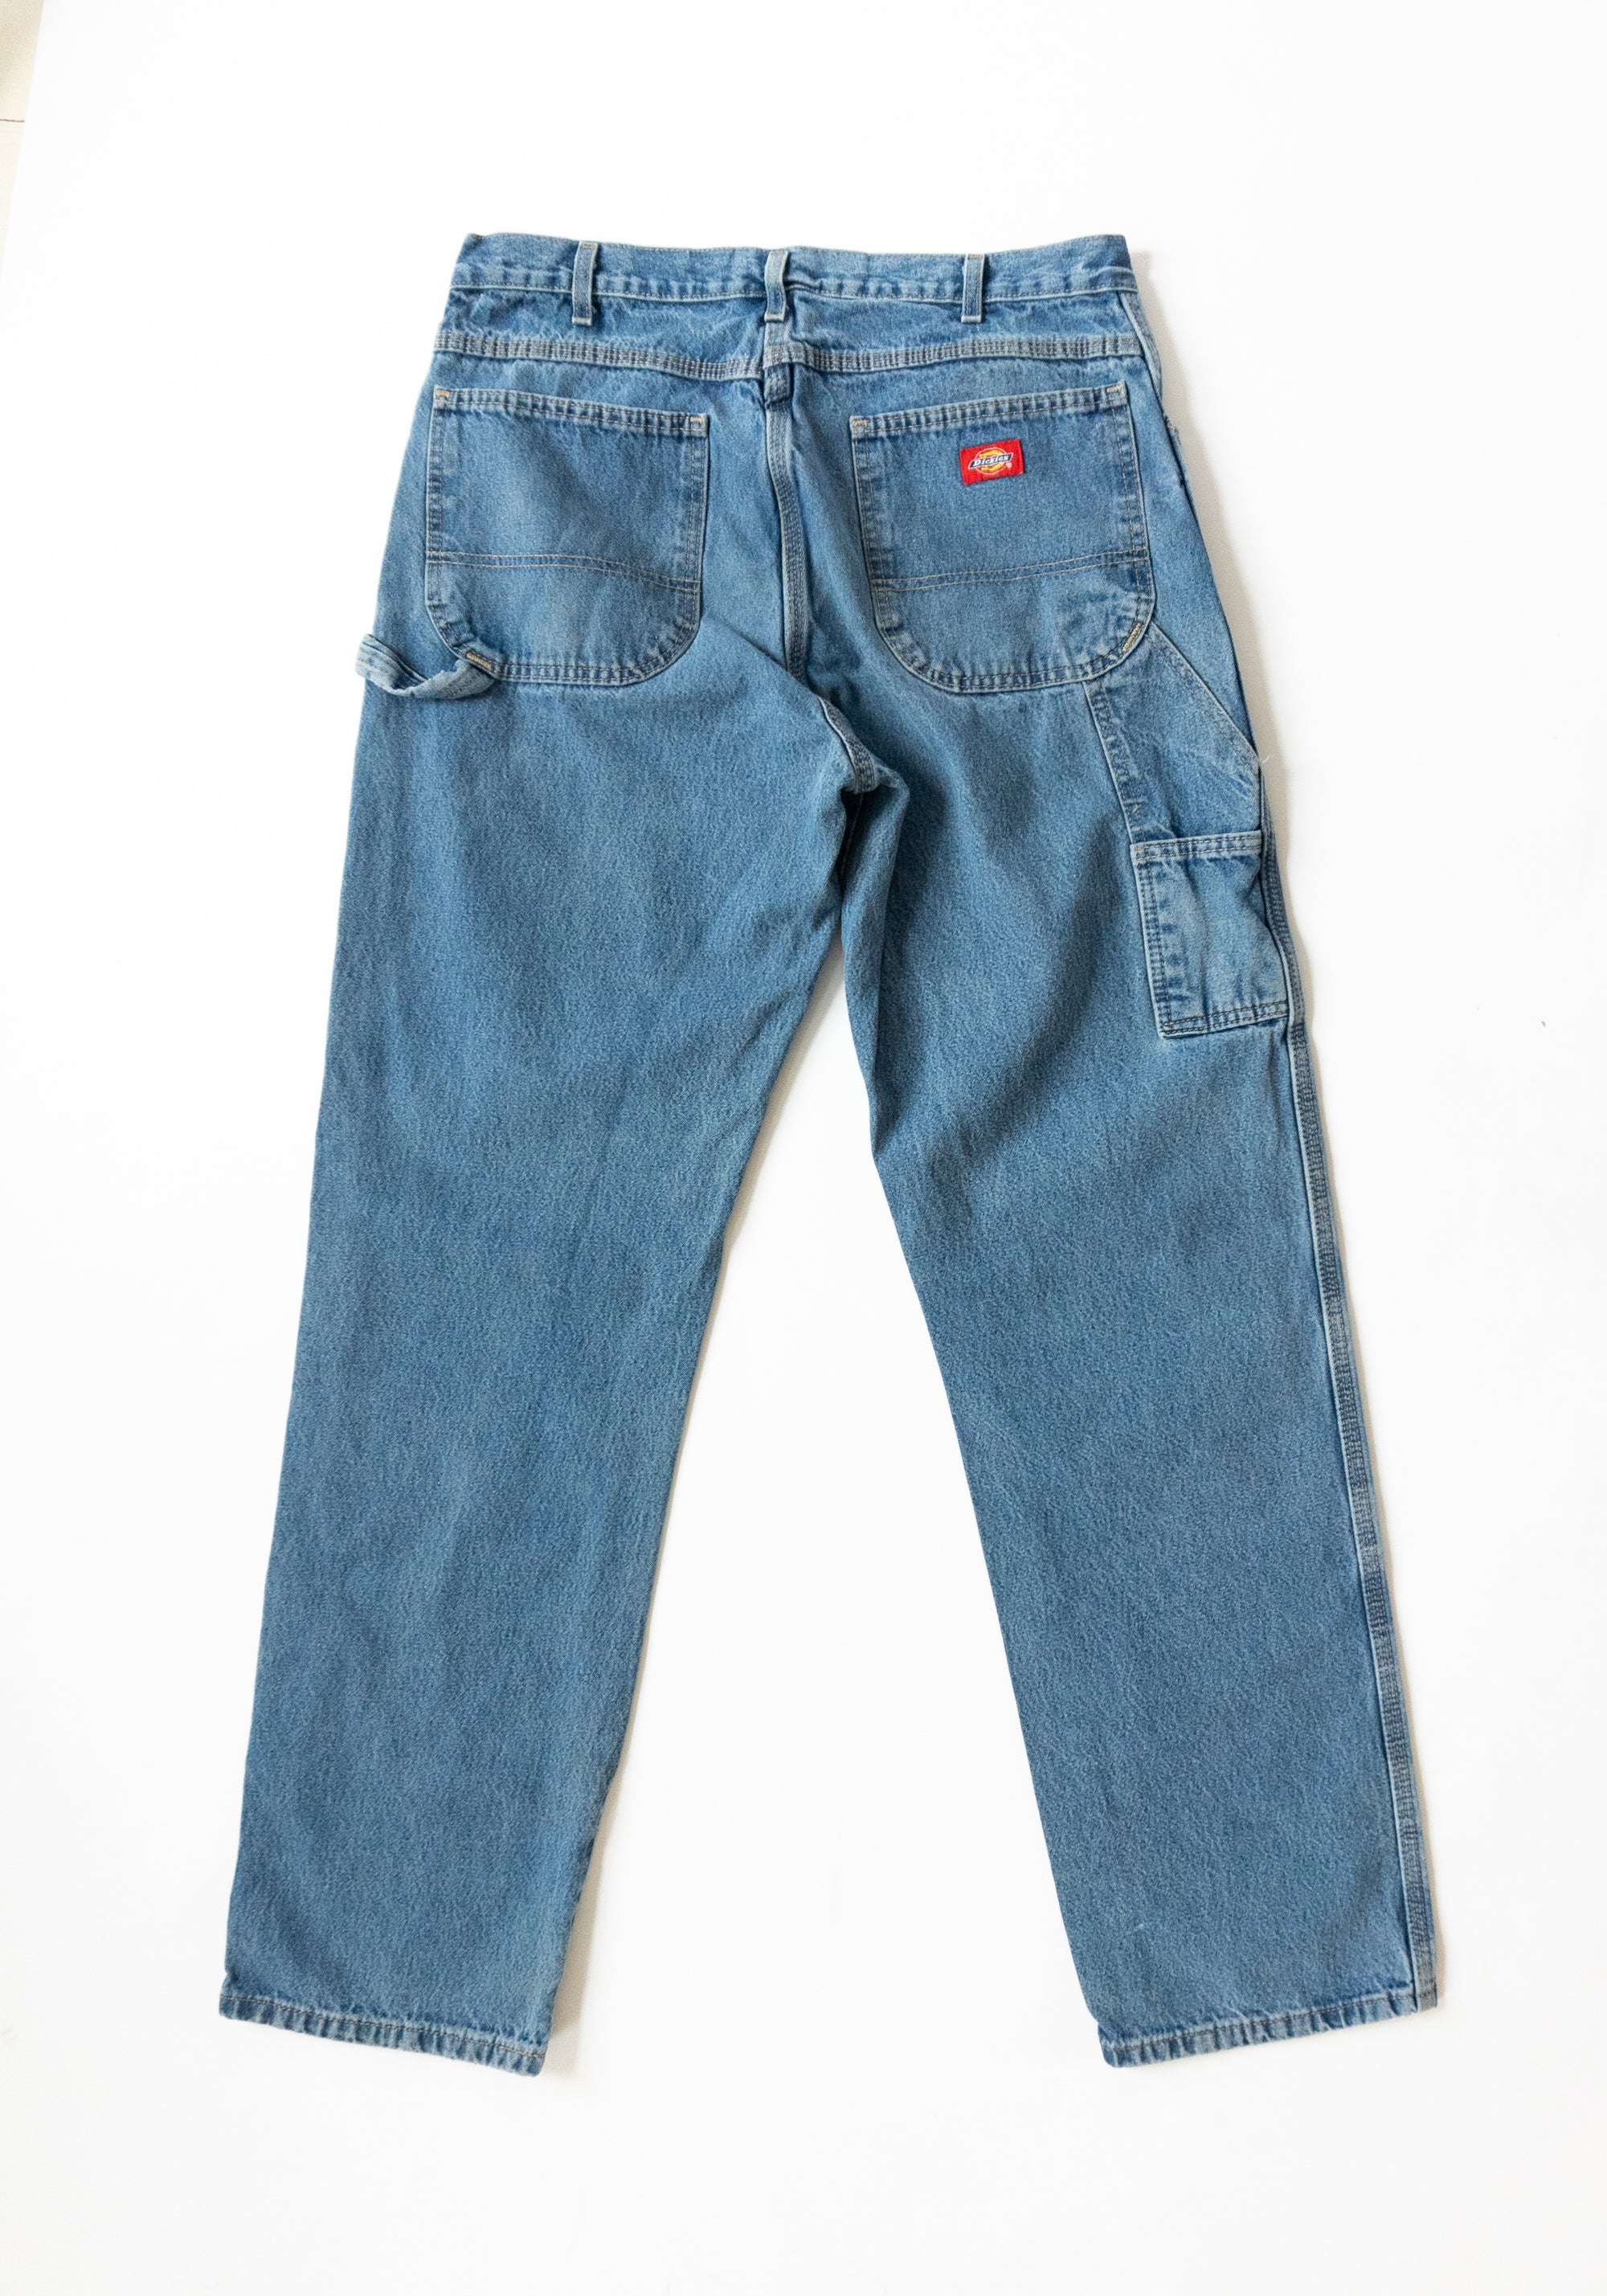 Vintage 90s Dickies Carpenter Jeans